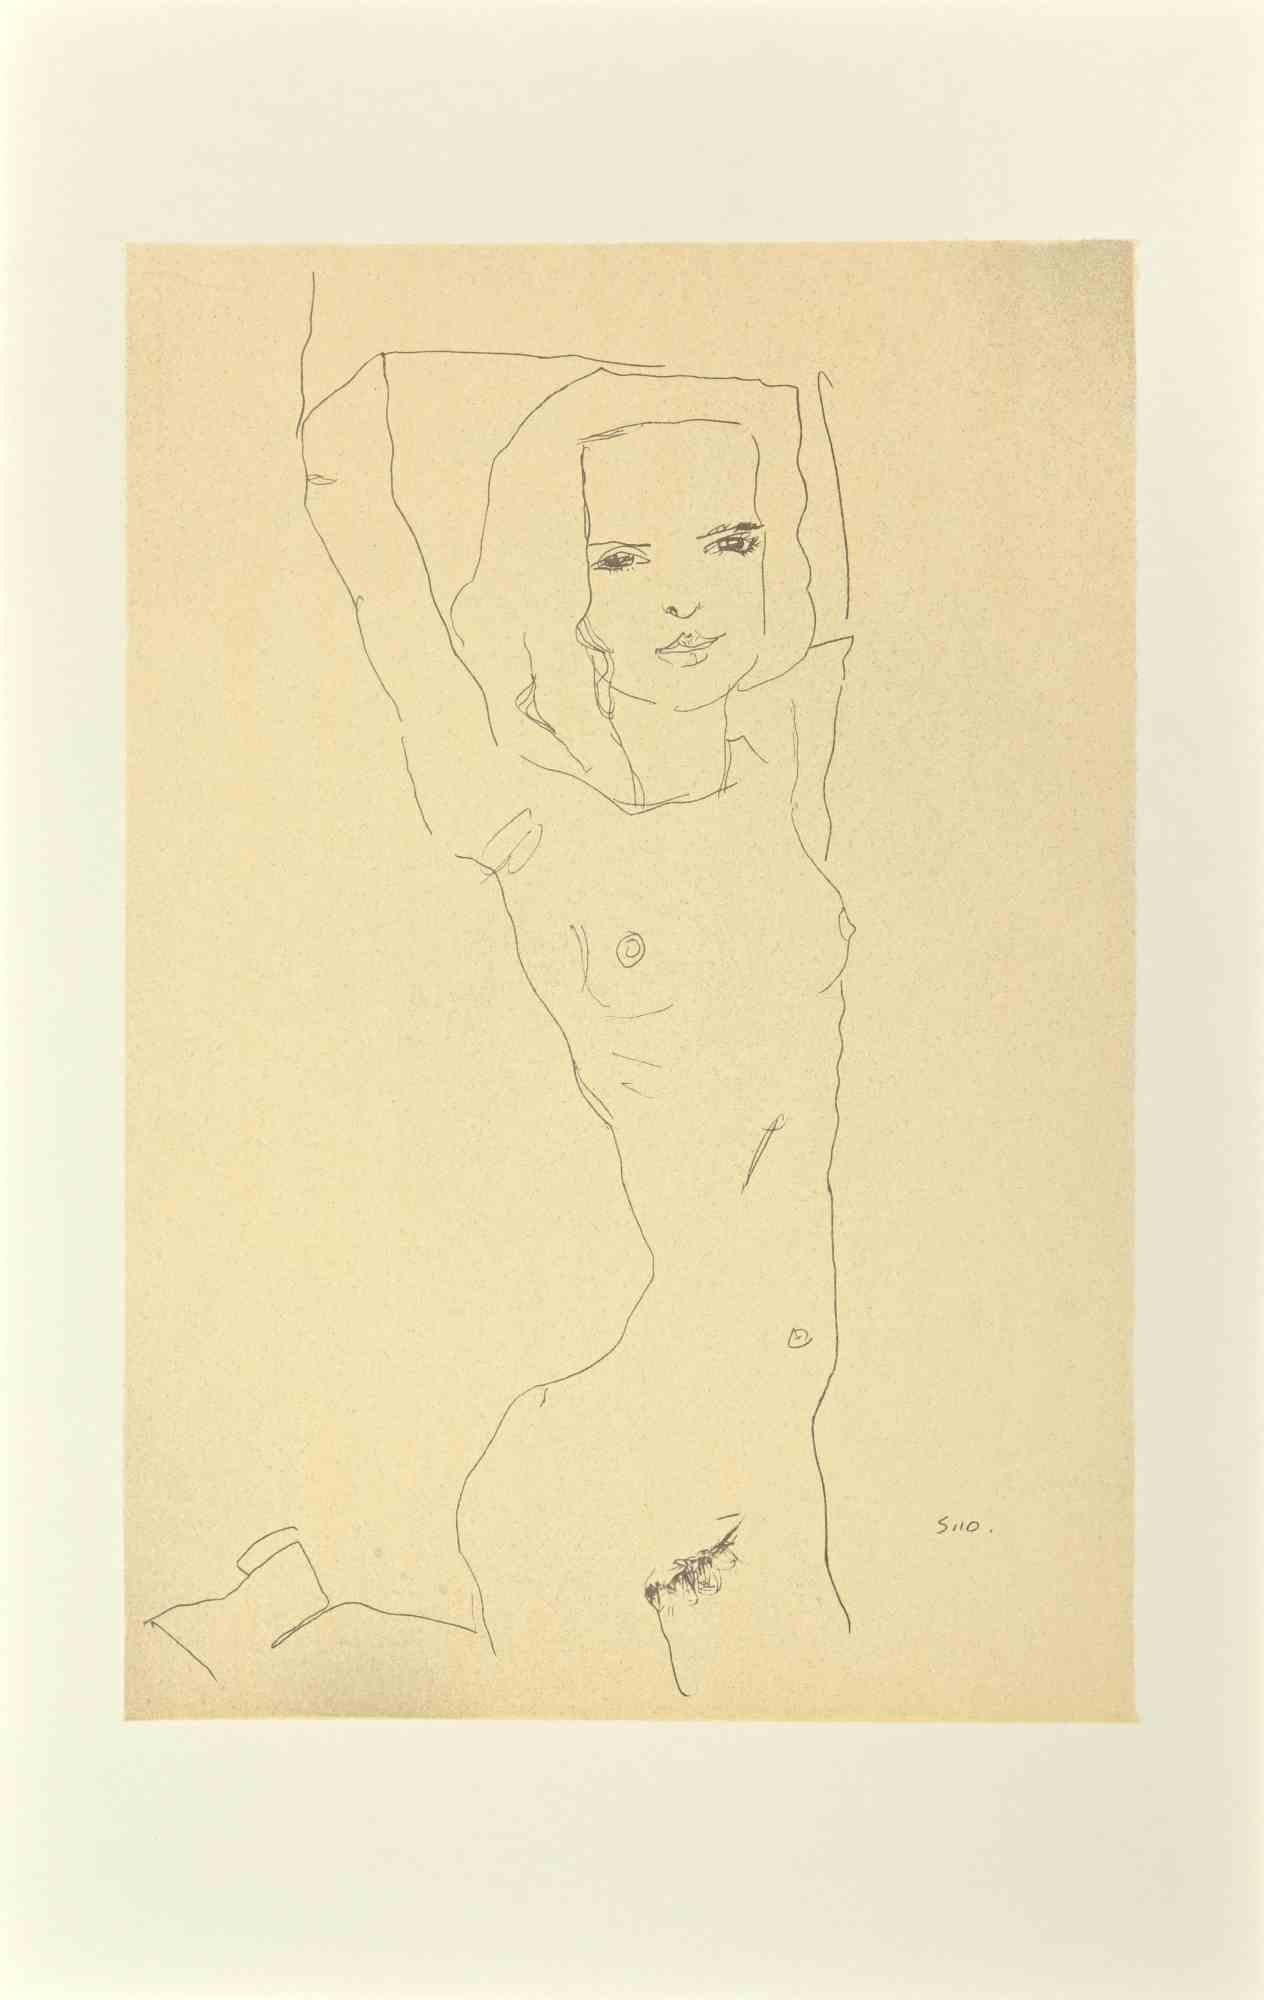 Jeune fille nue aux bras surélevés  - Lithographie  - 2007